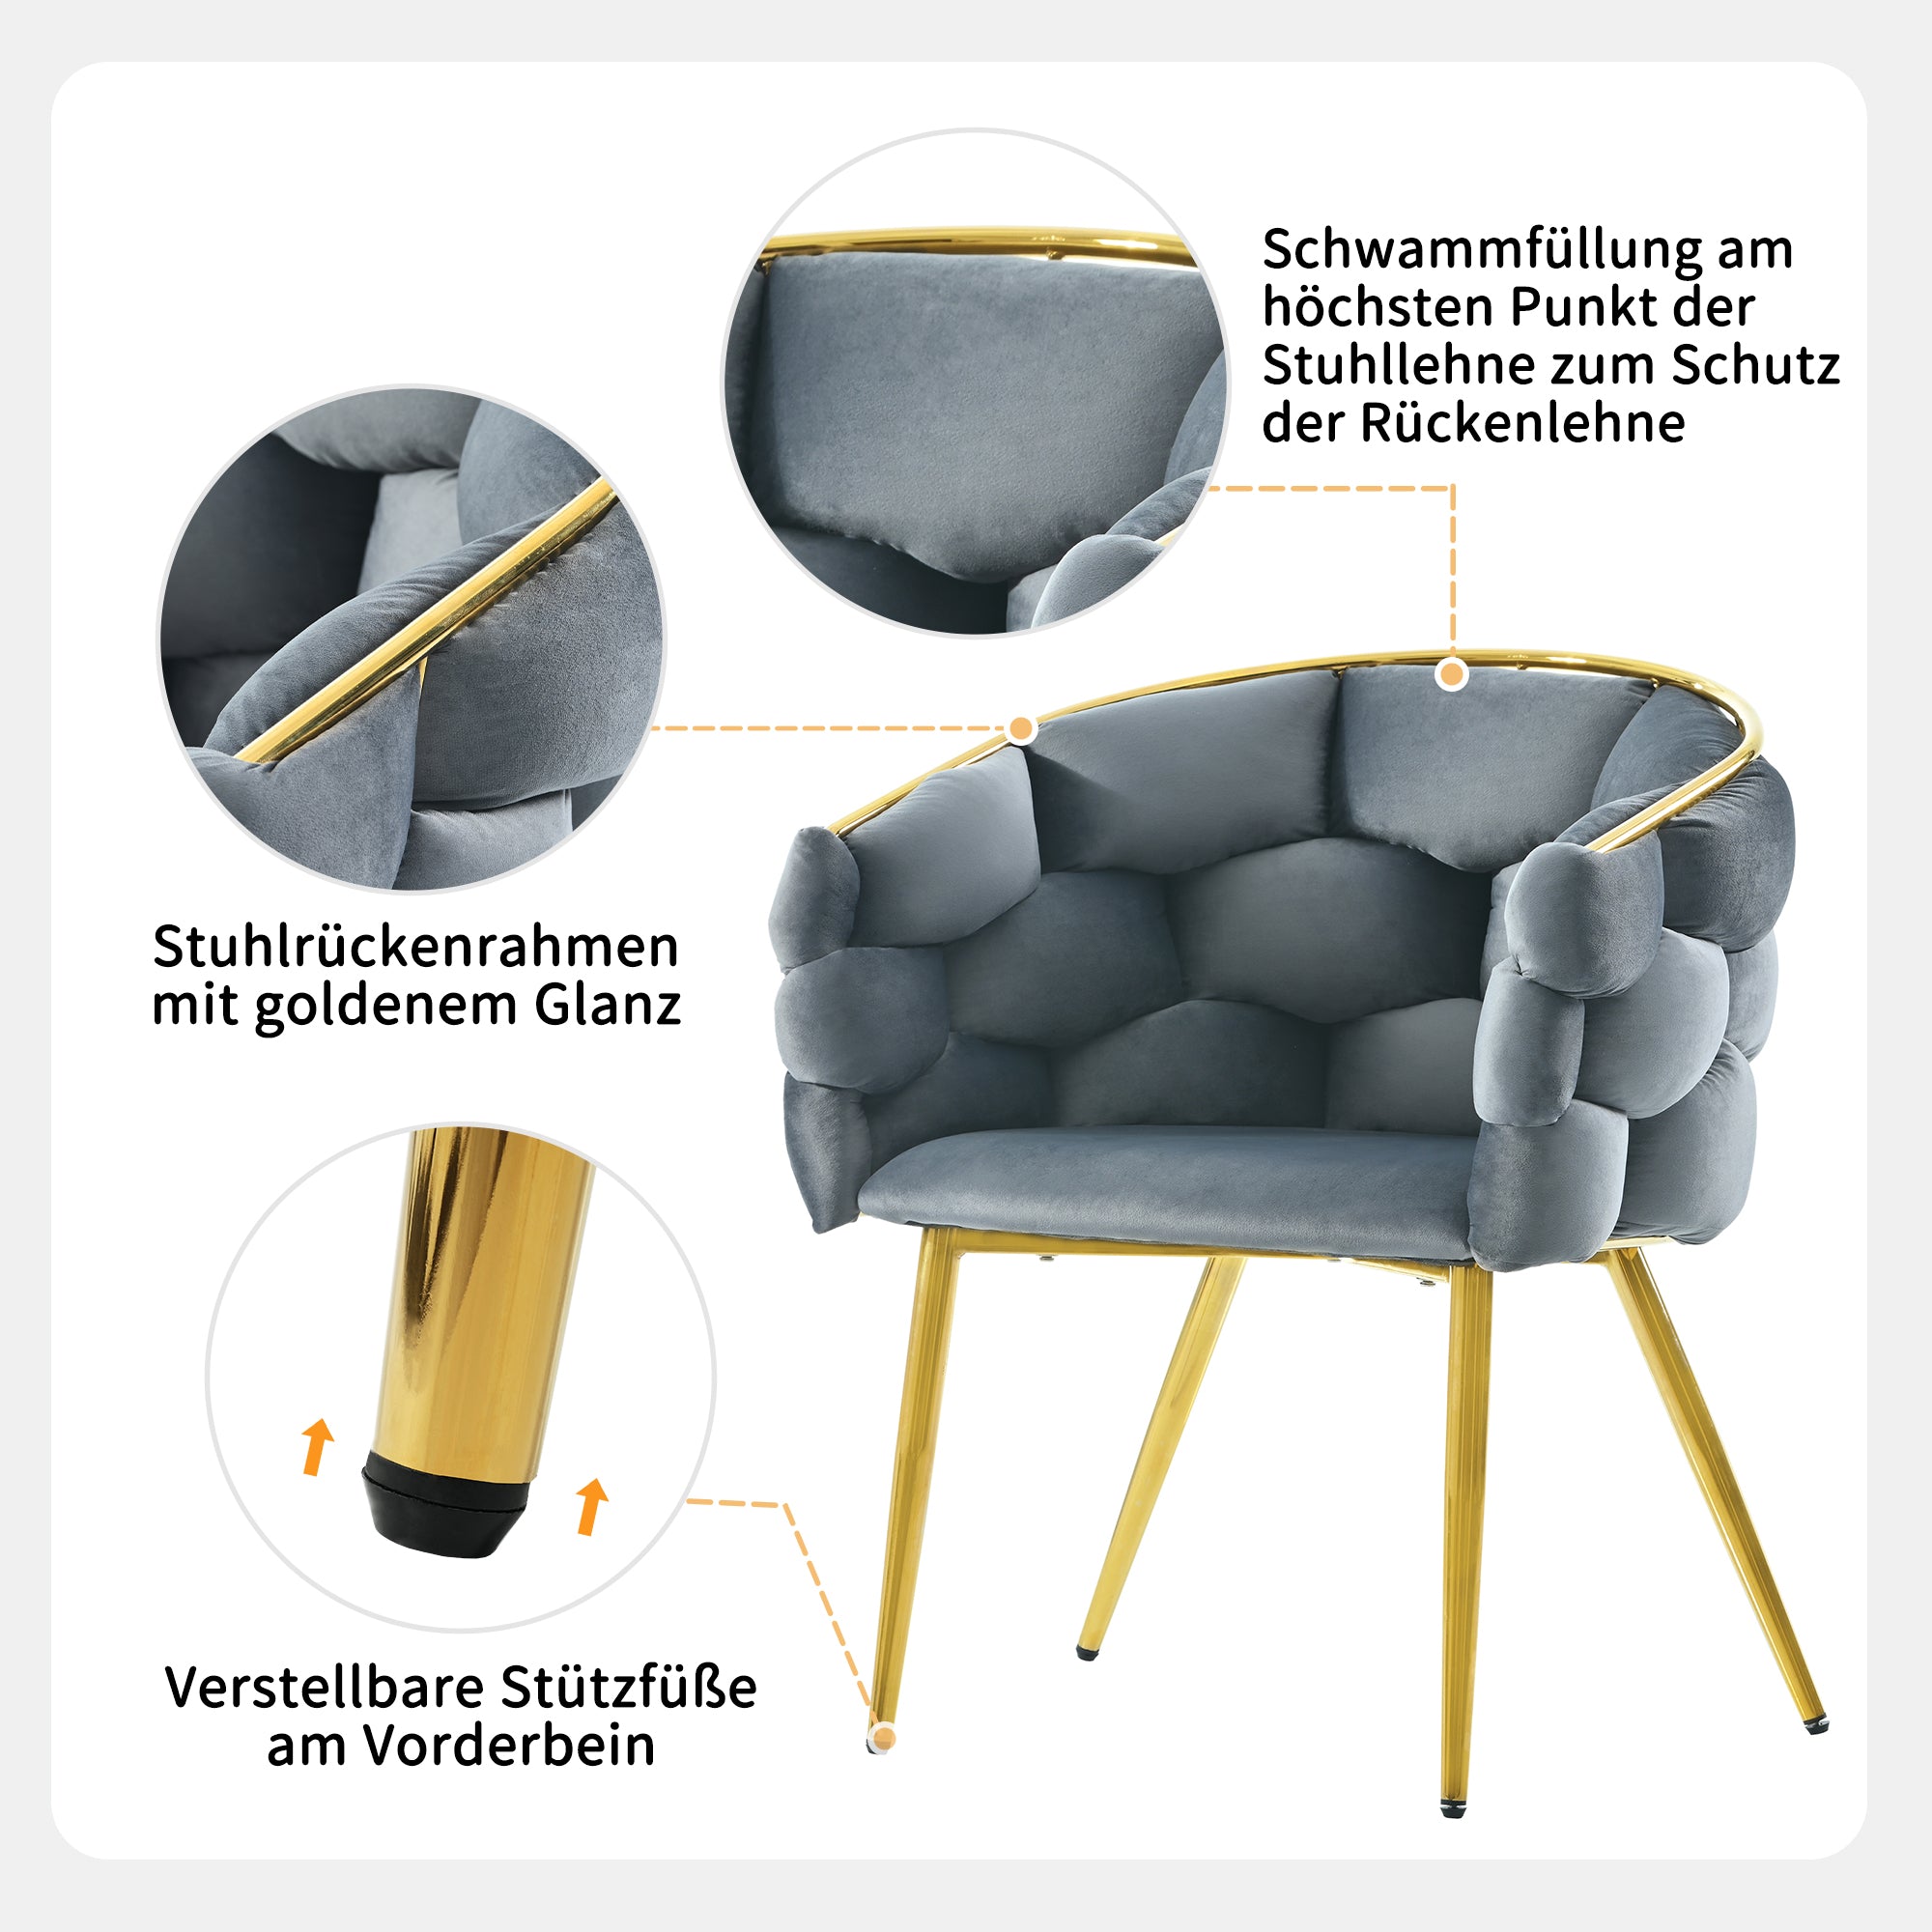 1 okwish Luxus-Samtstuhl (je 1 Satz Wohnzimmerstuhl, Esszimmerstuhl, Make-up-Stuhl, moderner Modestuhl), vergoldete Eisenbeine, grauer Stuhl, Bubble-Stuhl